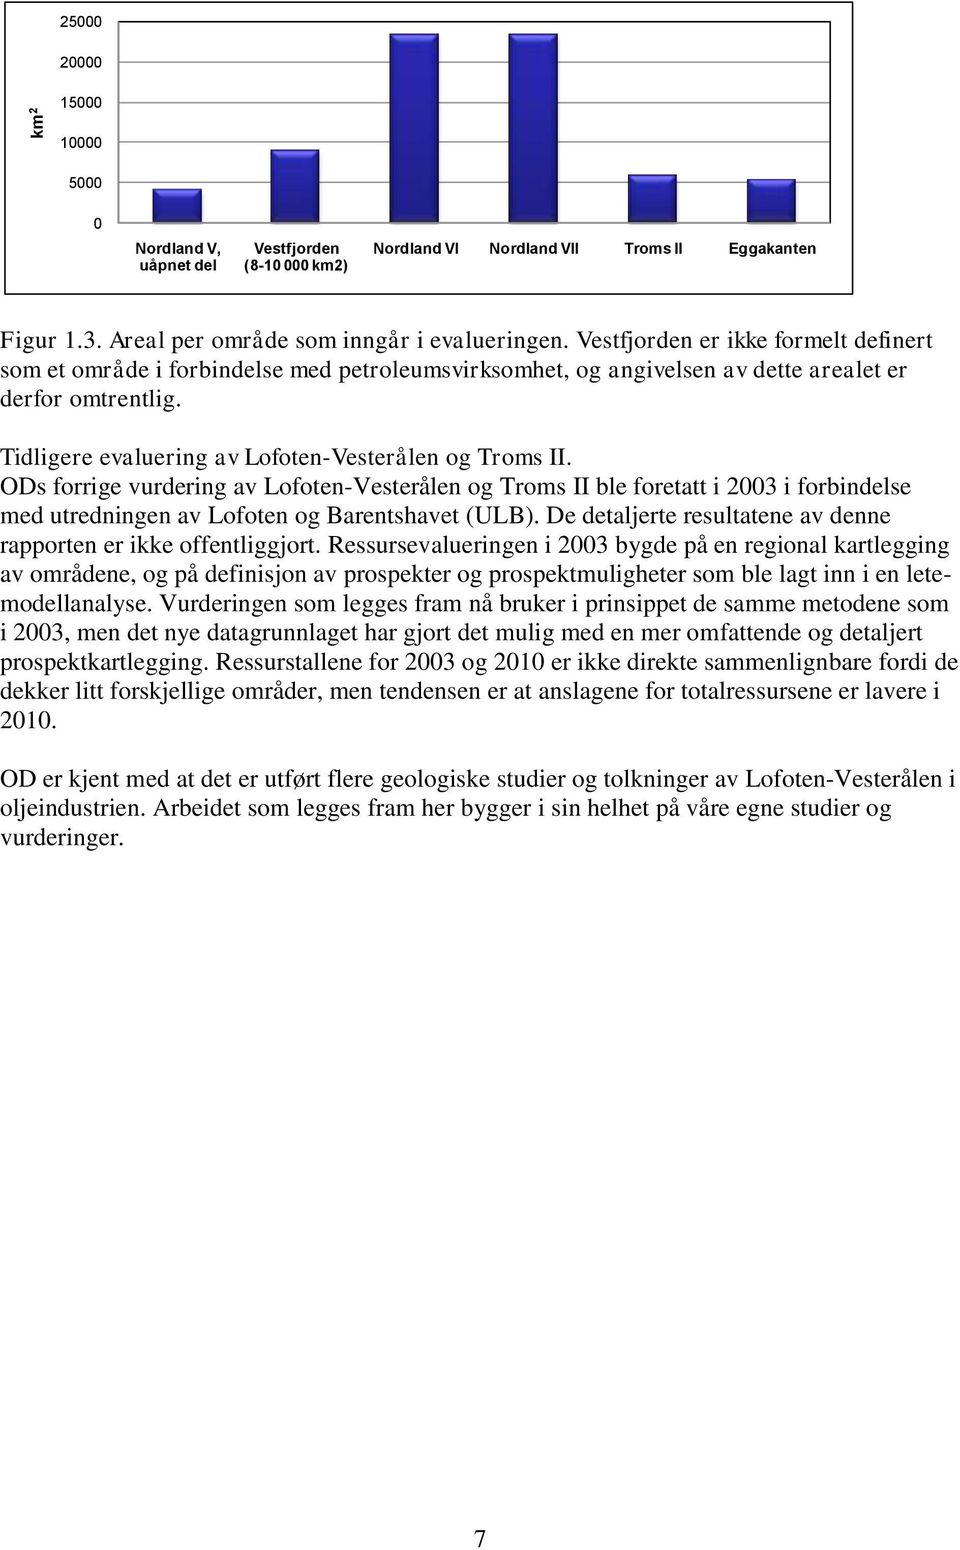 ODs forrige vurdering av Lofoten-Vesterålen og Troms II ble foretatt i 2003 i forbindelse med utredningen av Lofoten og Barentshavet (ULB).